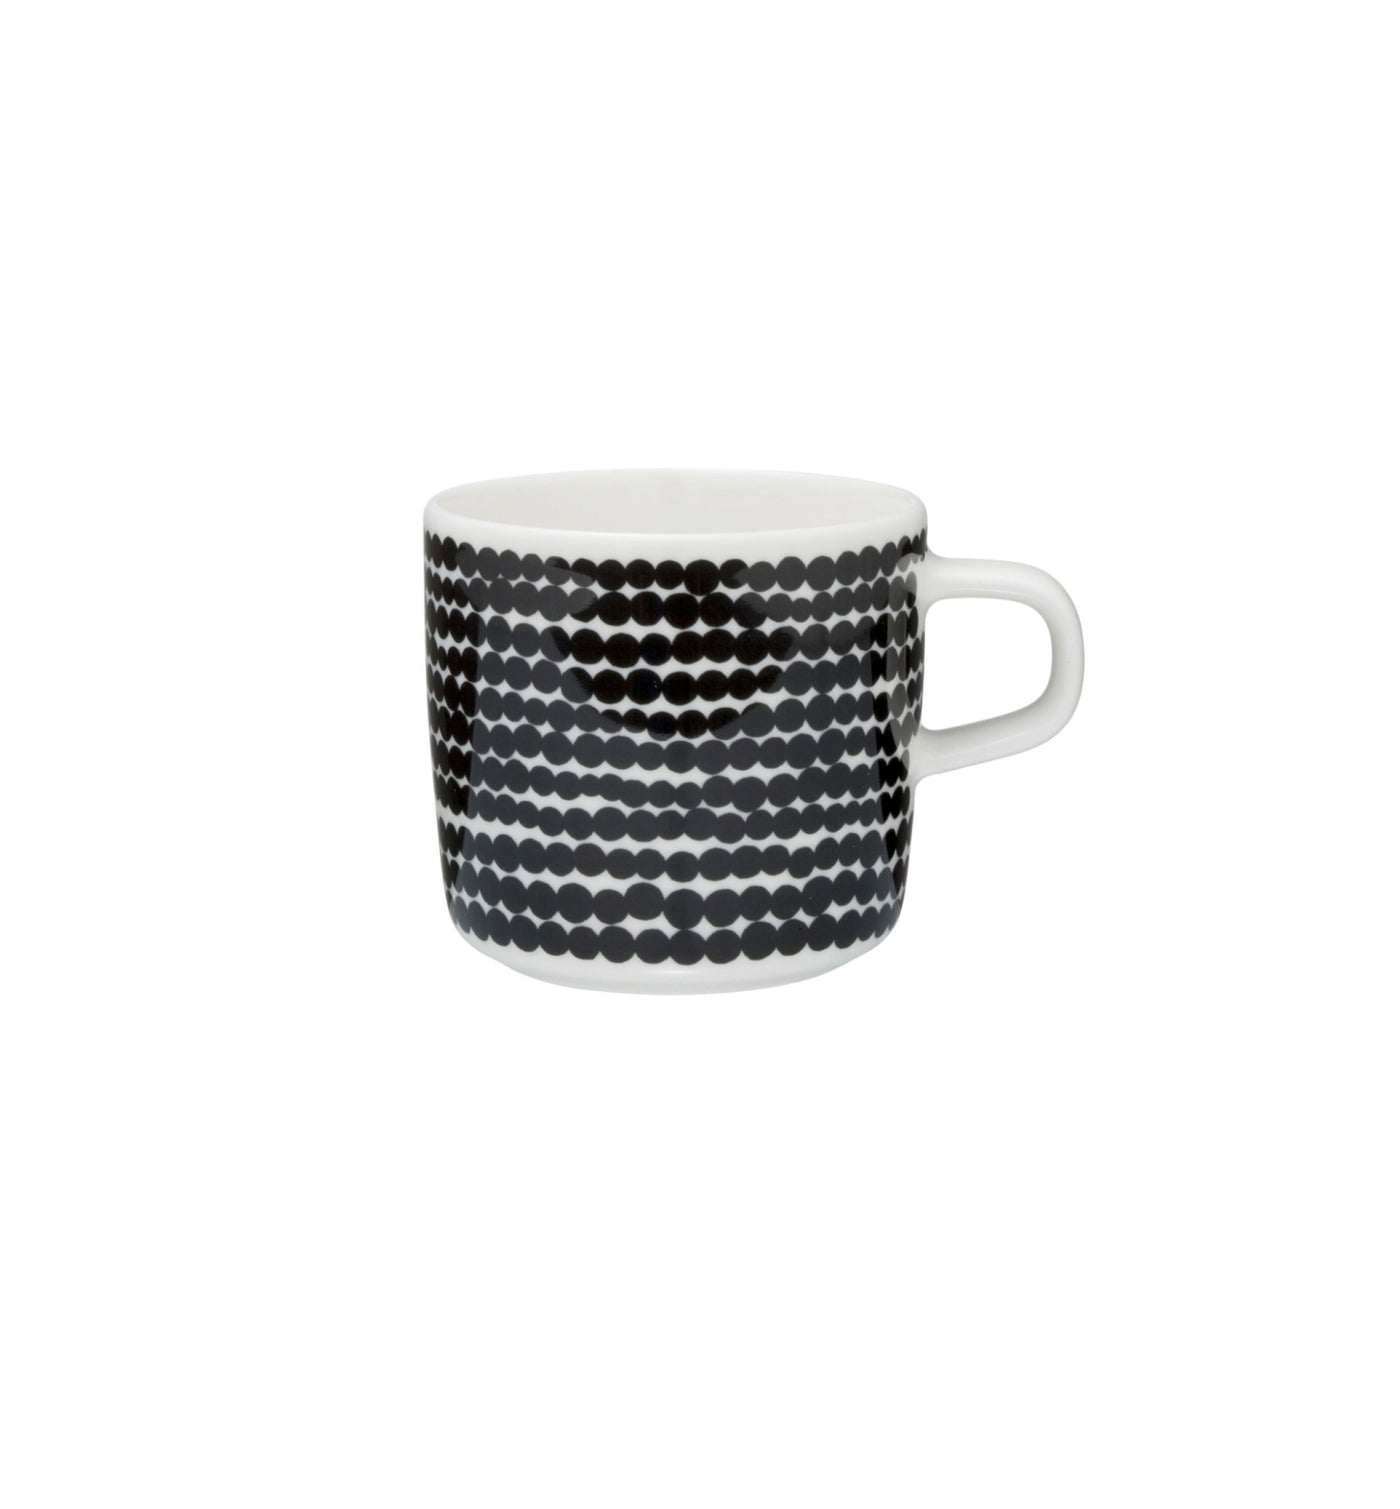 Marimekko Oiva/Siirtolapuutarha coffee cup 2 dl - black